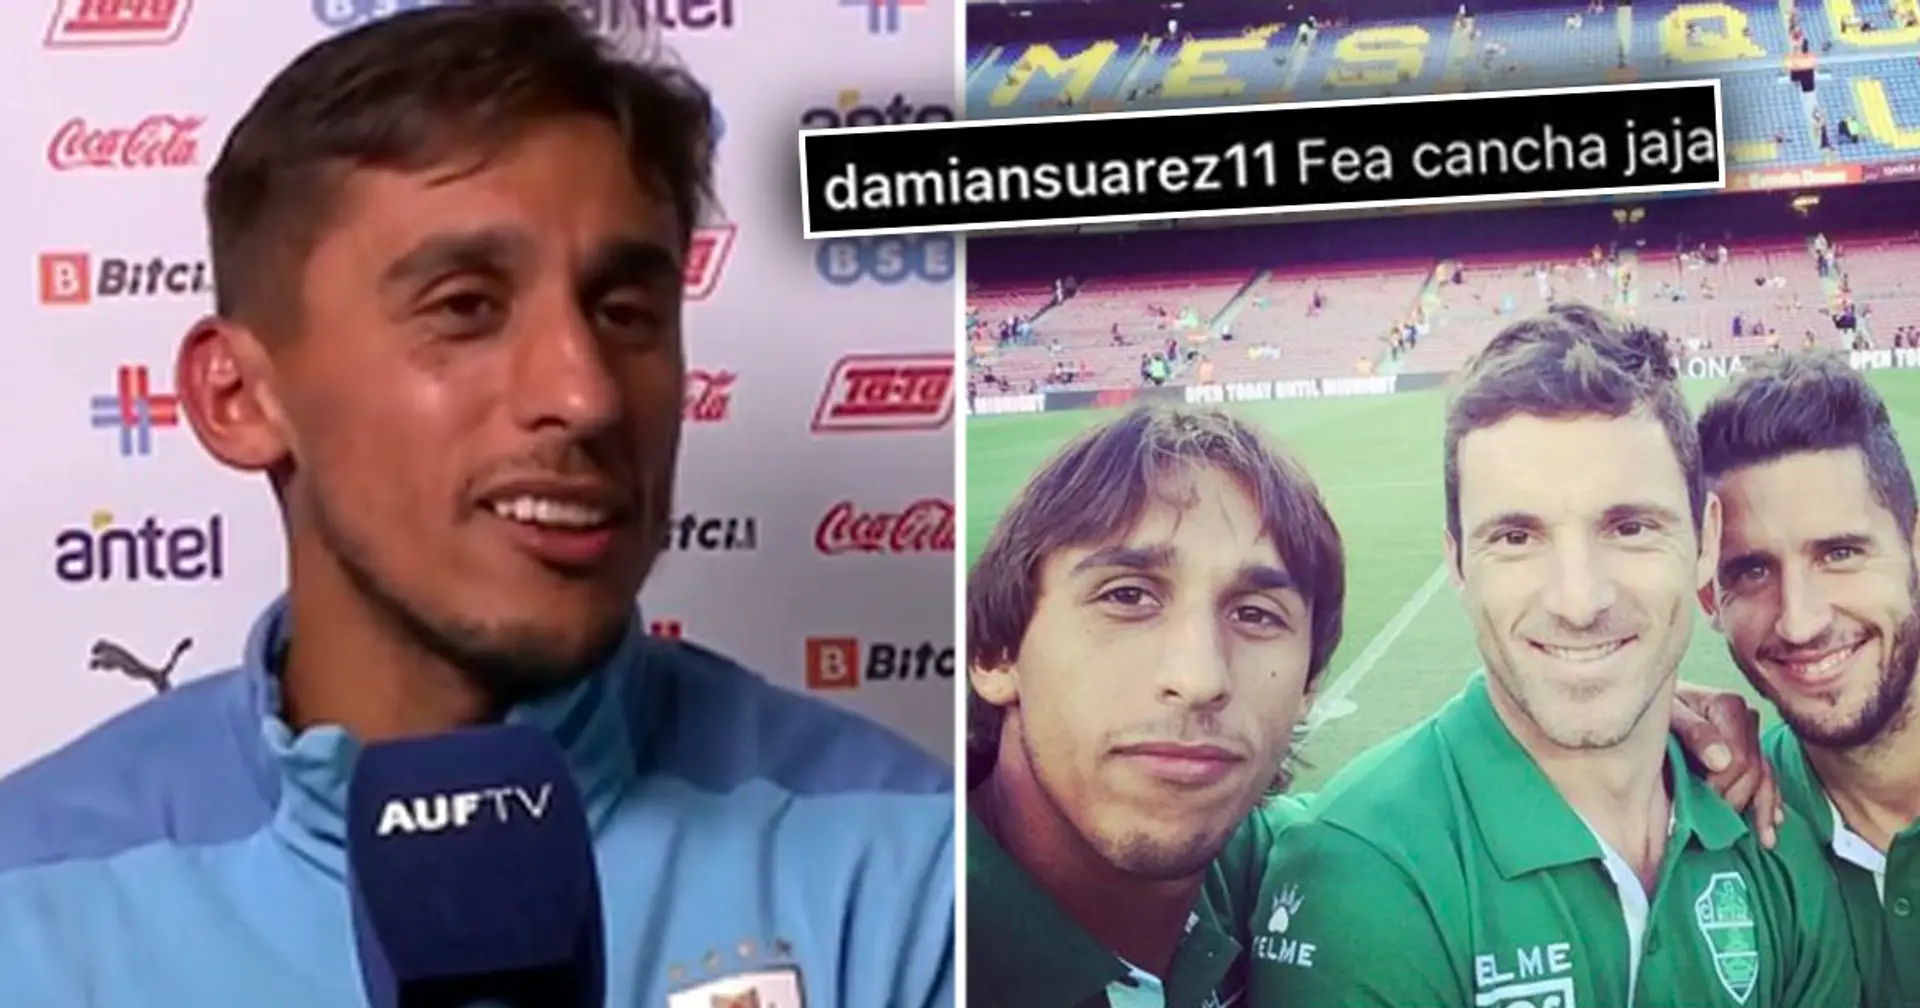 "Quel stade moche": la publication Instagram de Damian Suarez sur le Camp Nou devient virale